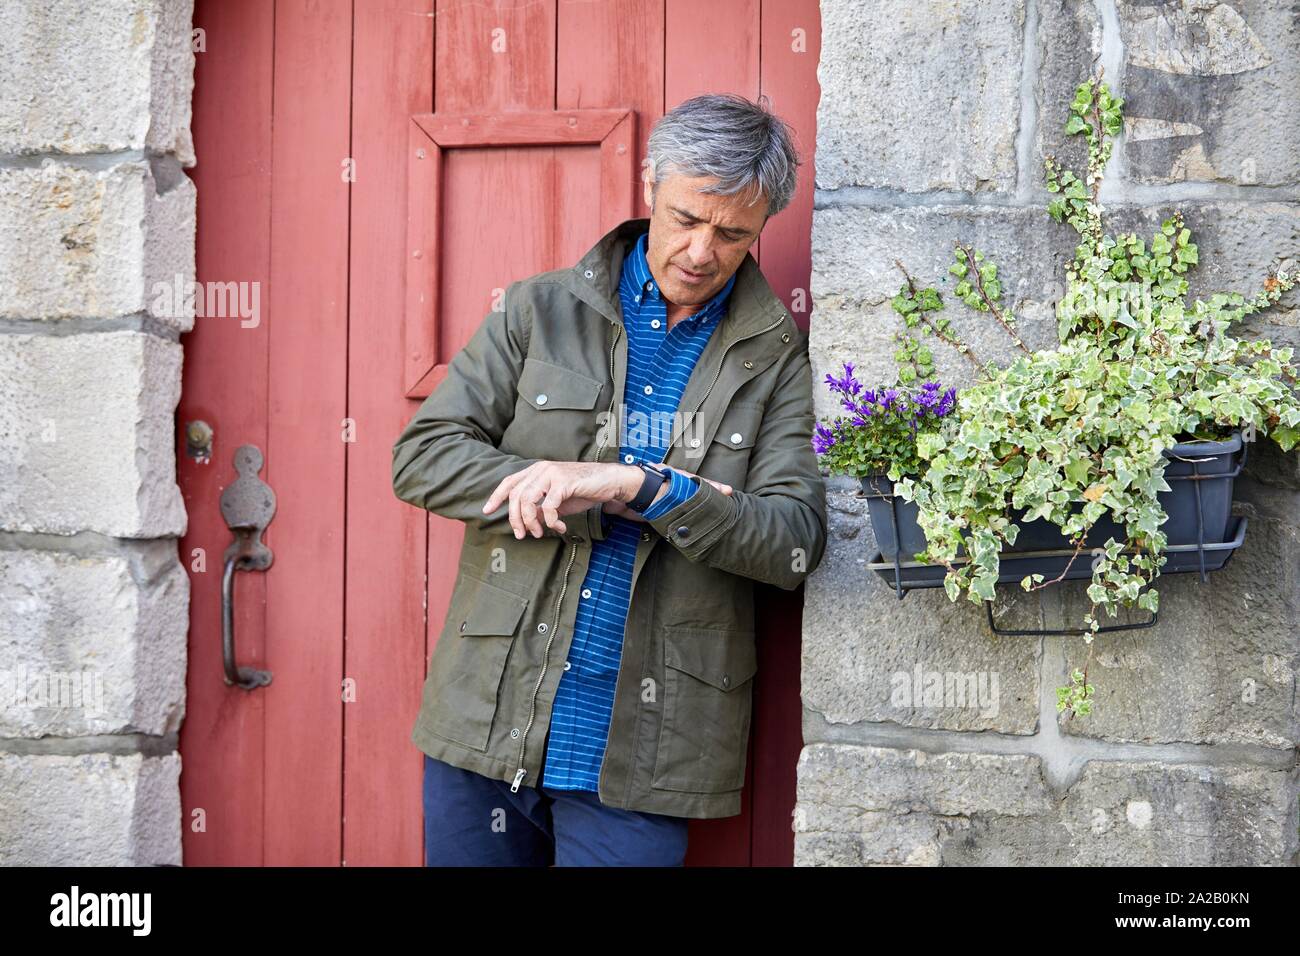 Reifer Mann auf seine Uhr schaut und wartet. Rue Pocalette, baskische Architektur, Ciboure, Aquitaine, Baskenland, Frankreich Stockfoto